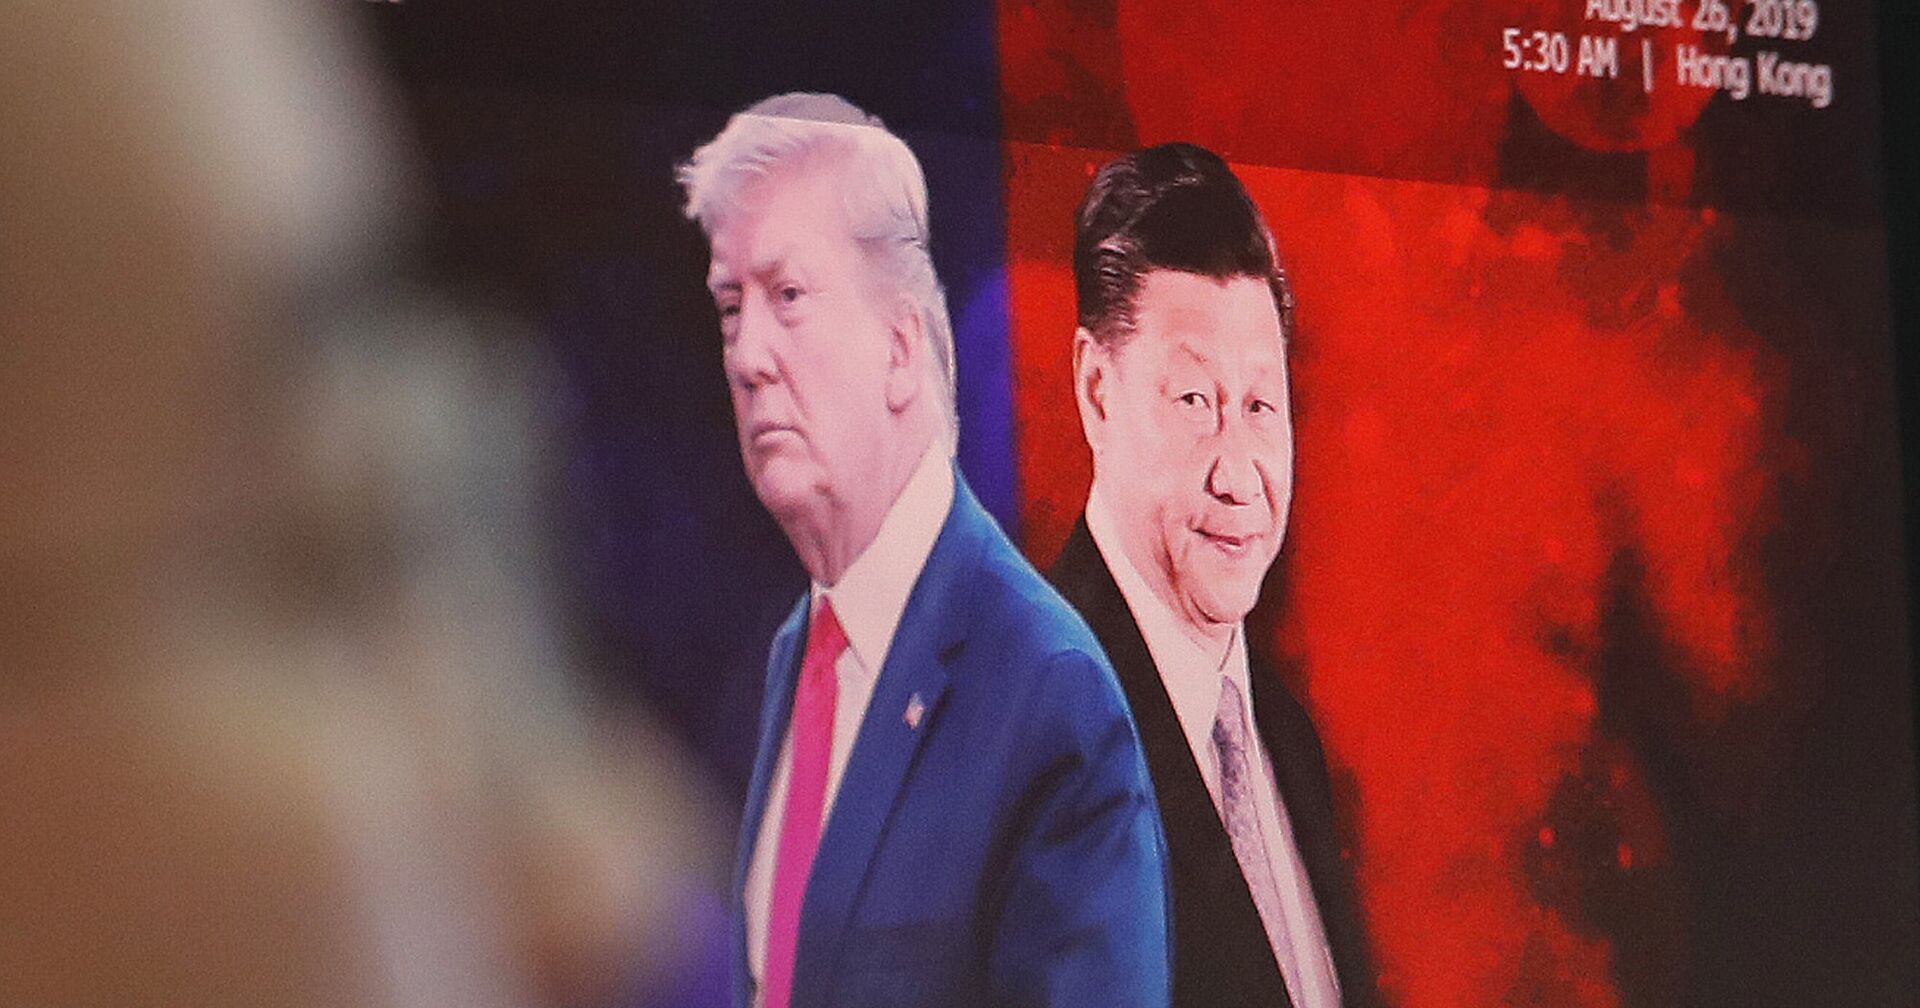 Президент США Дональд Трамп пожимает руку председателю Китая Си Цзиньпину во время саммита лидеров G20 в Осаке - ИноСМИ, 1920, 05.01.2021